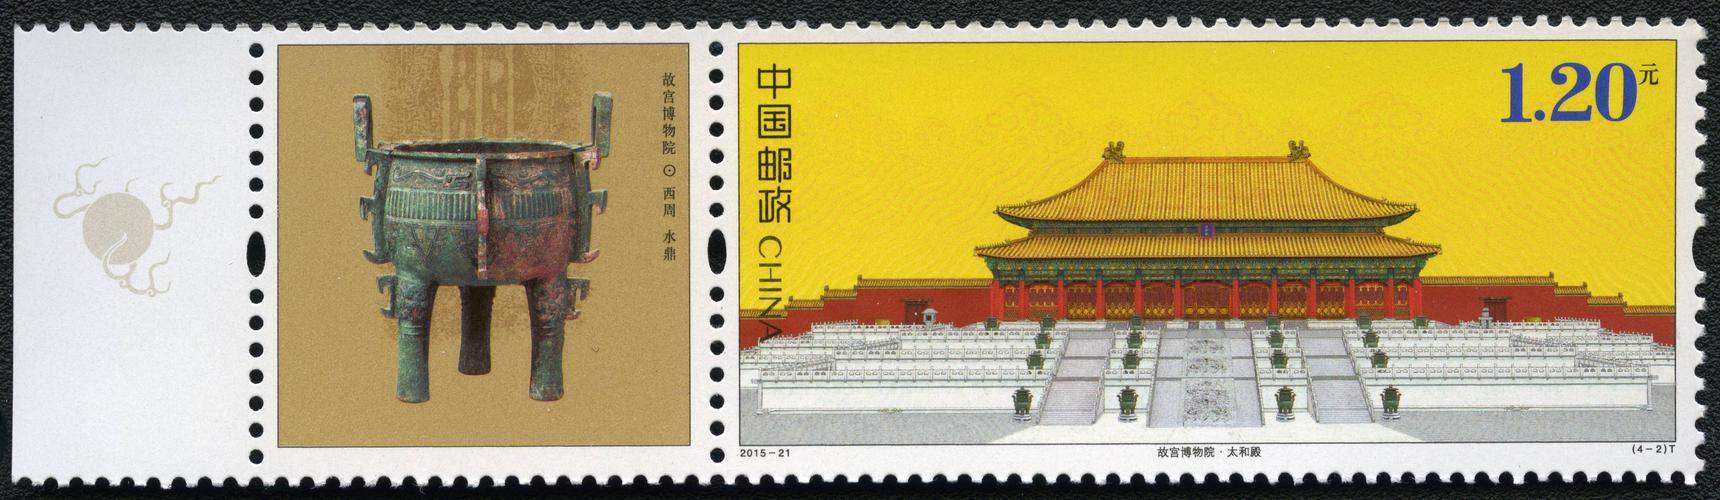 北京故宫纪念品邮票的相关图片